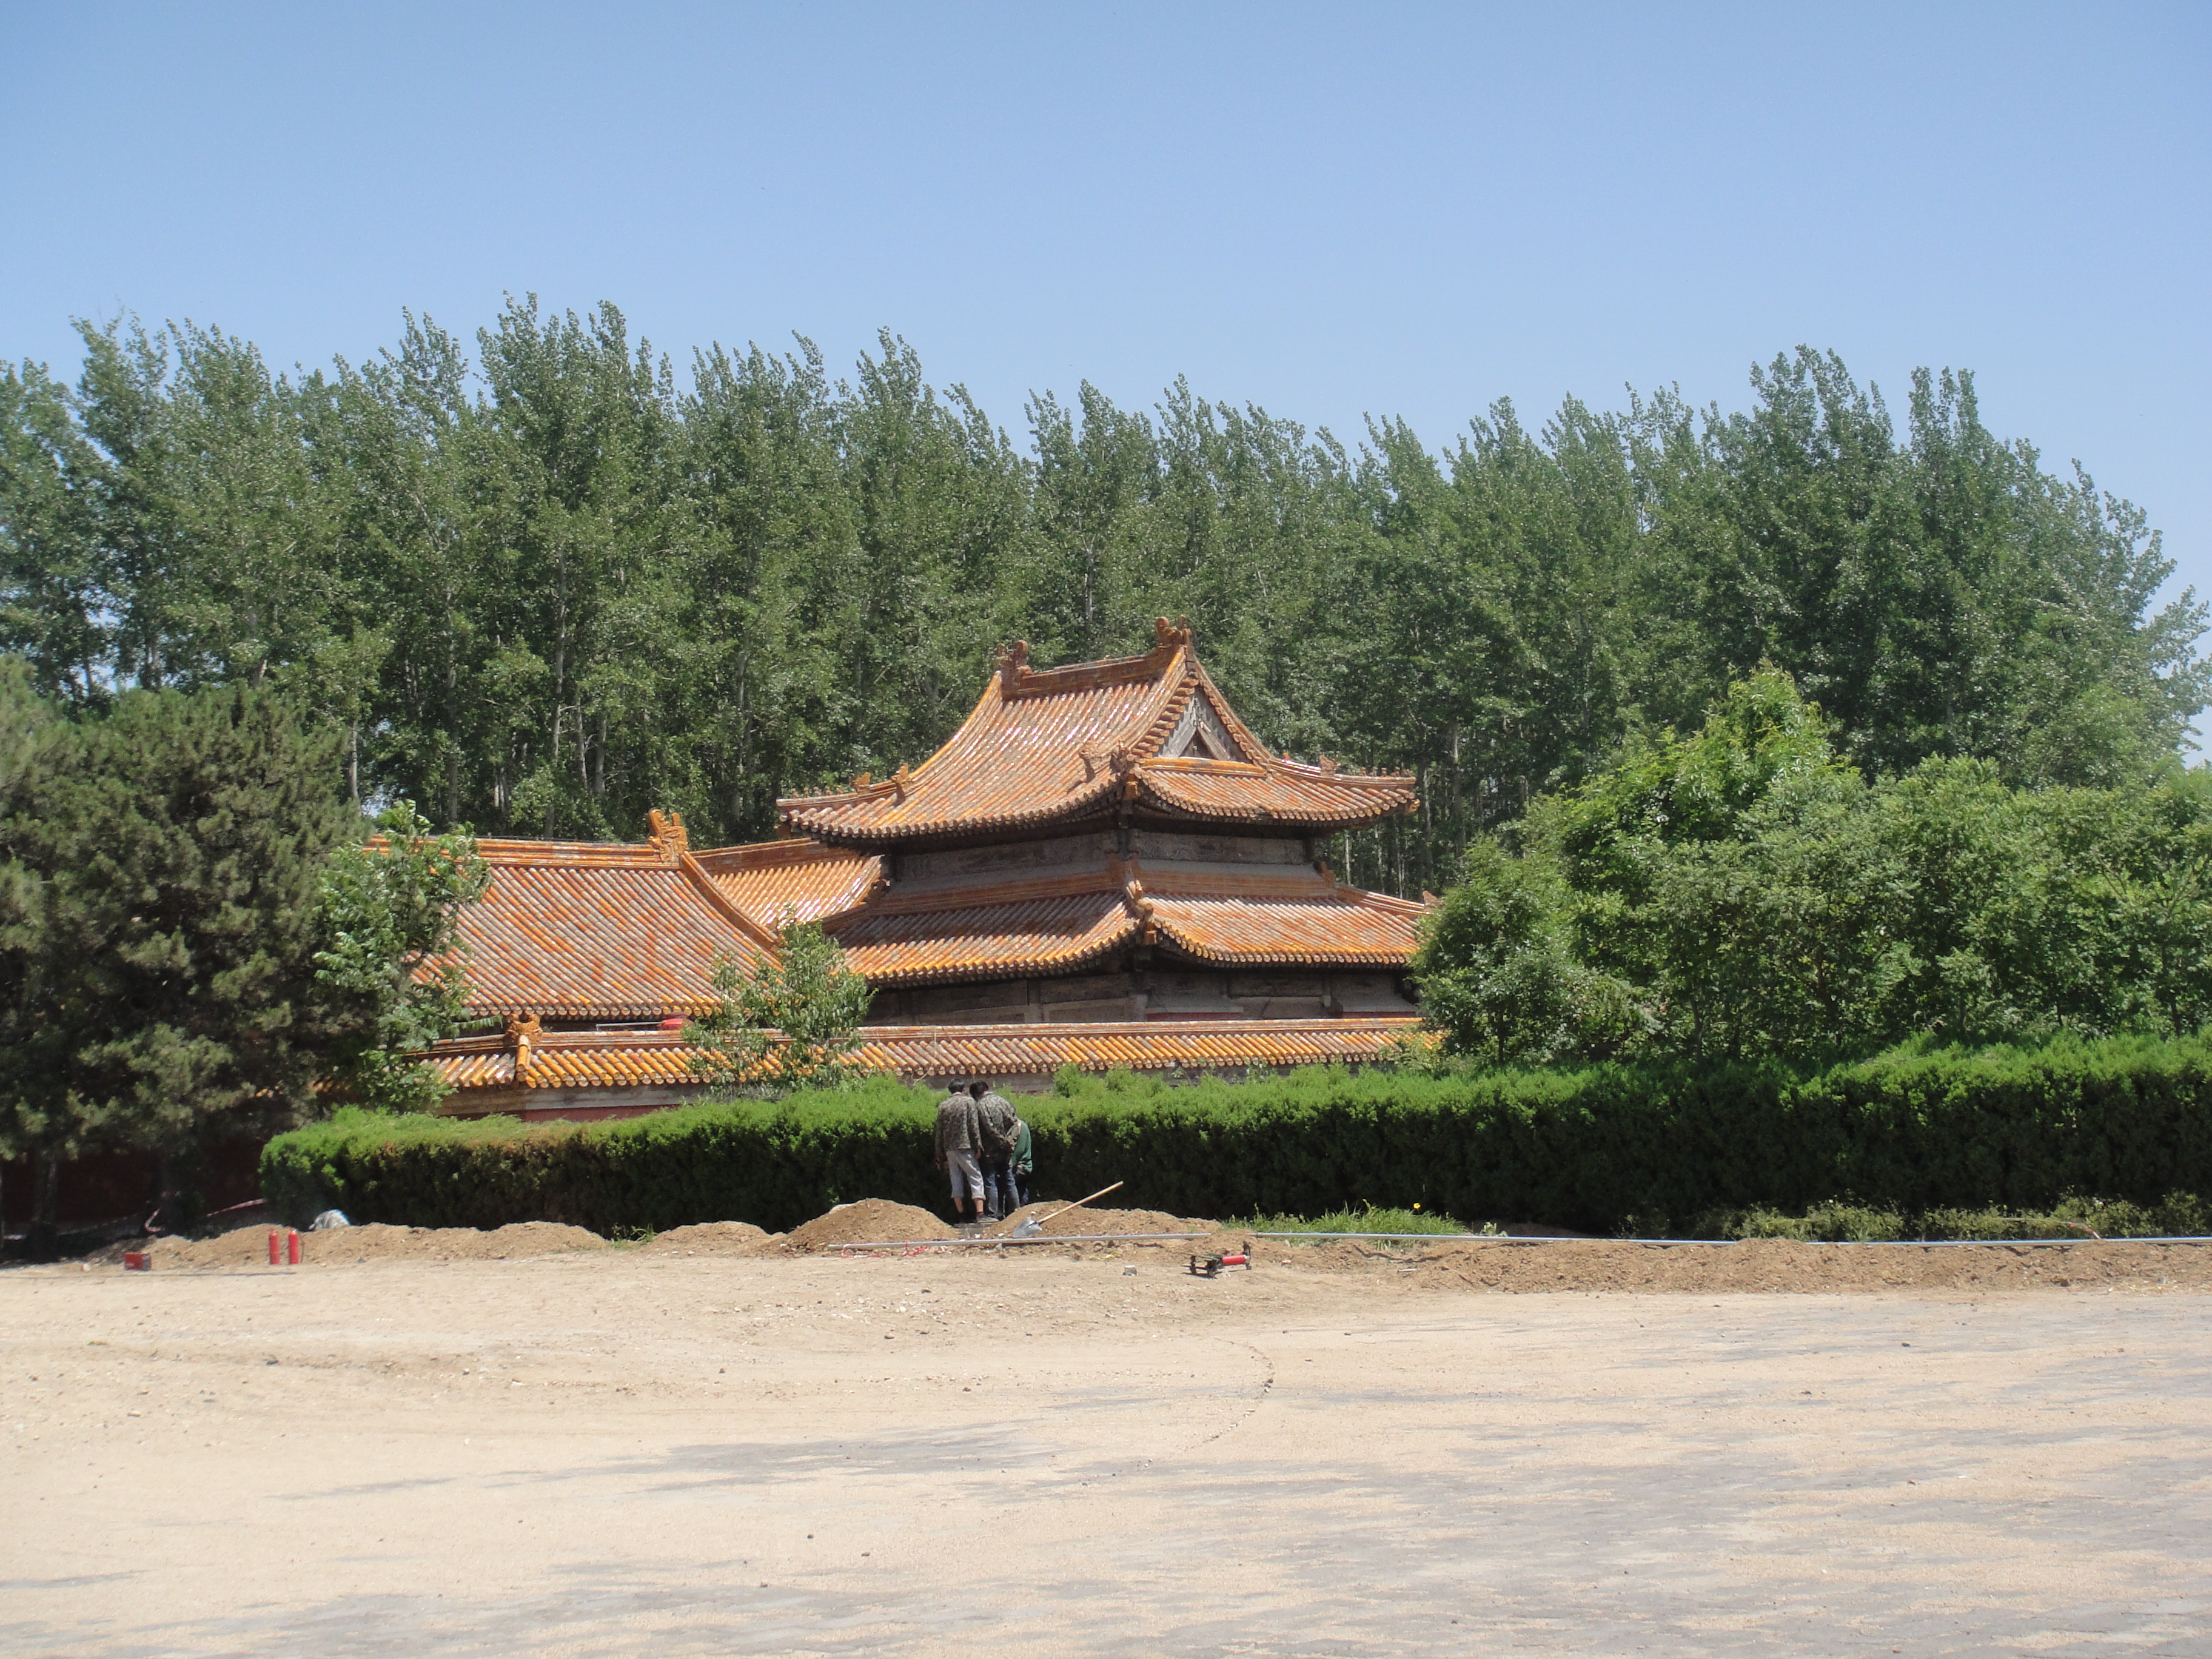 清西陵位于河北省易县，距北京约100公里。清西陵共有14座陵墓